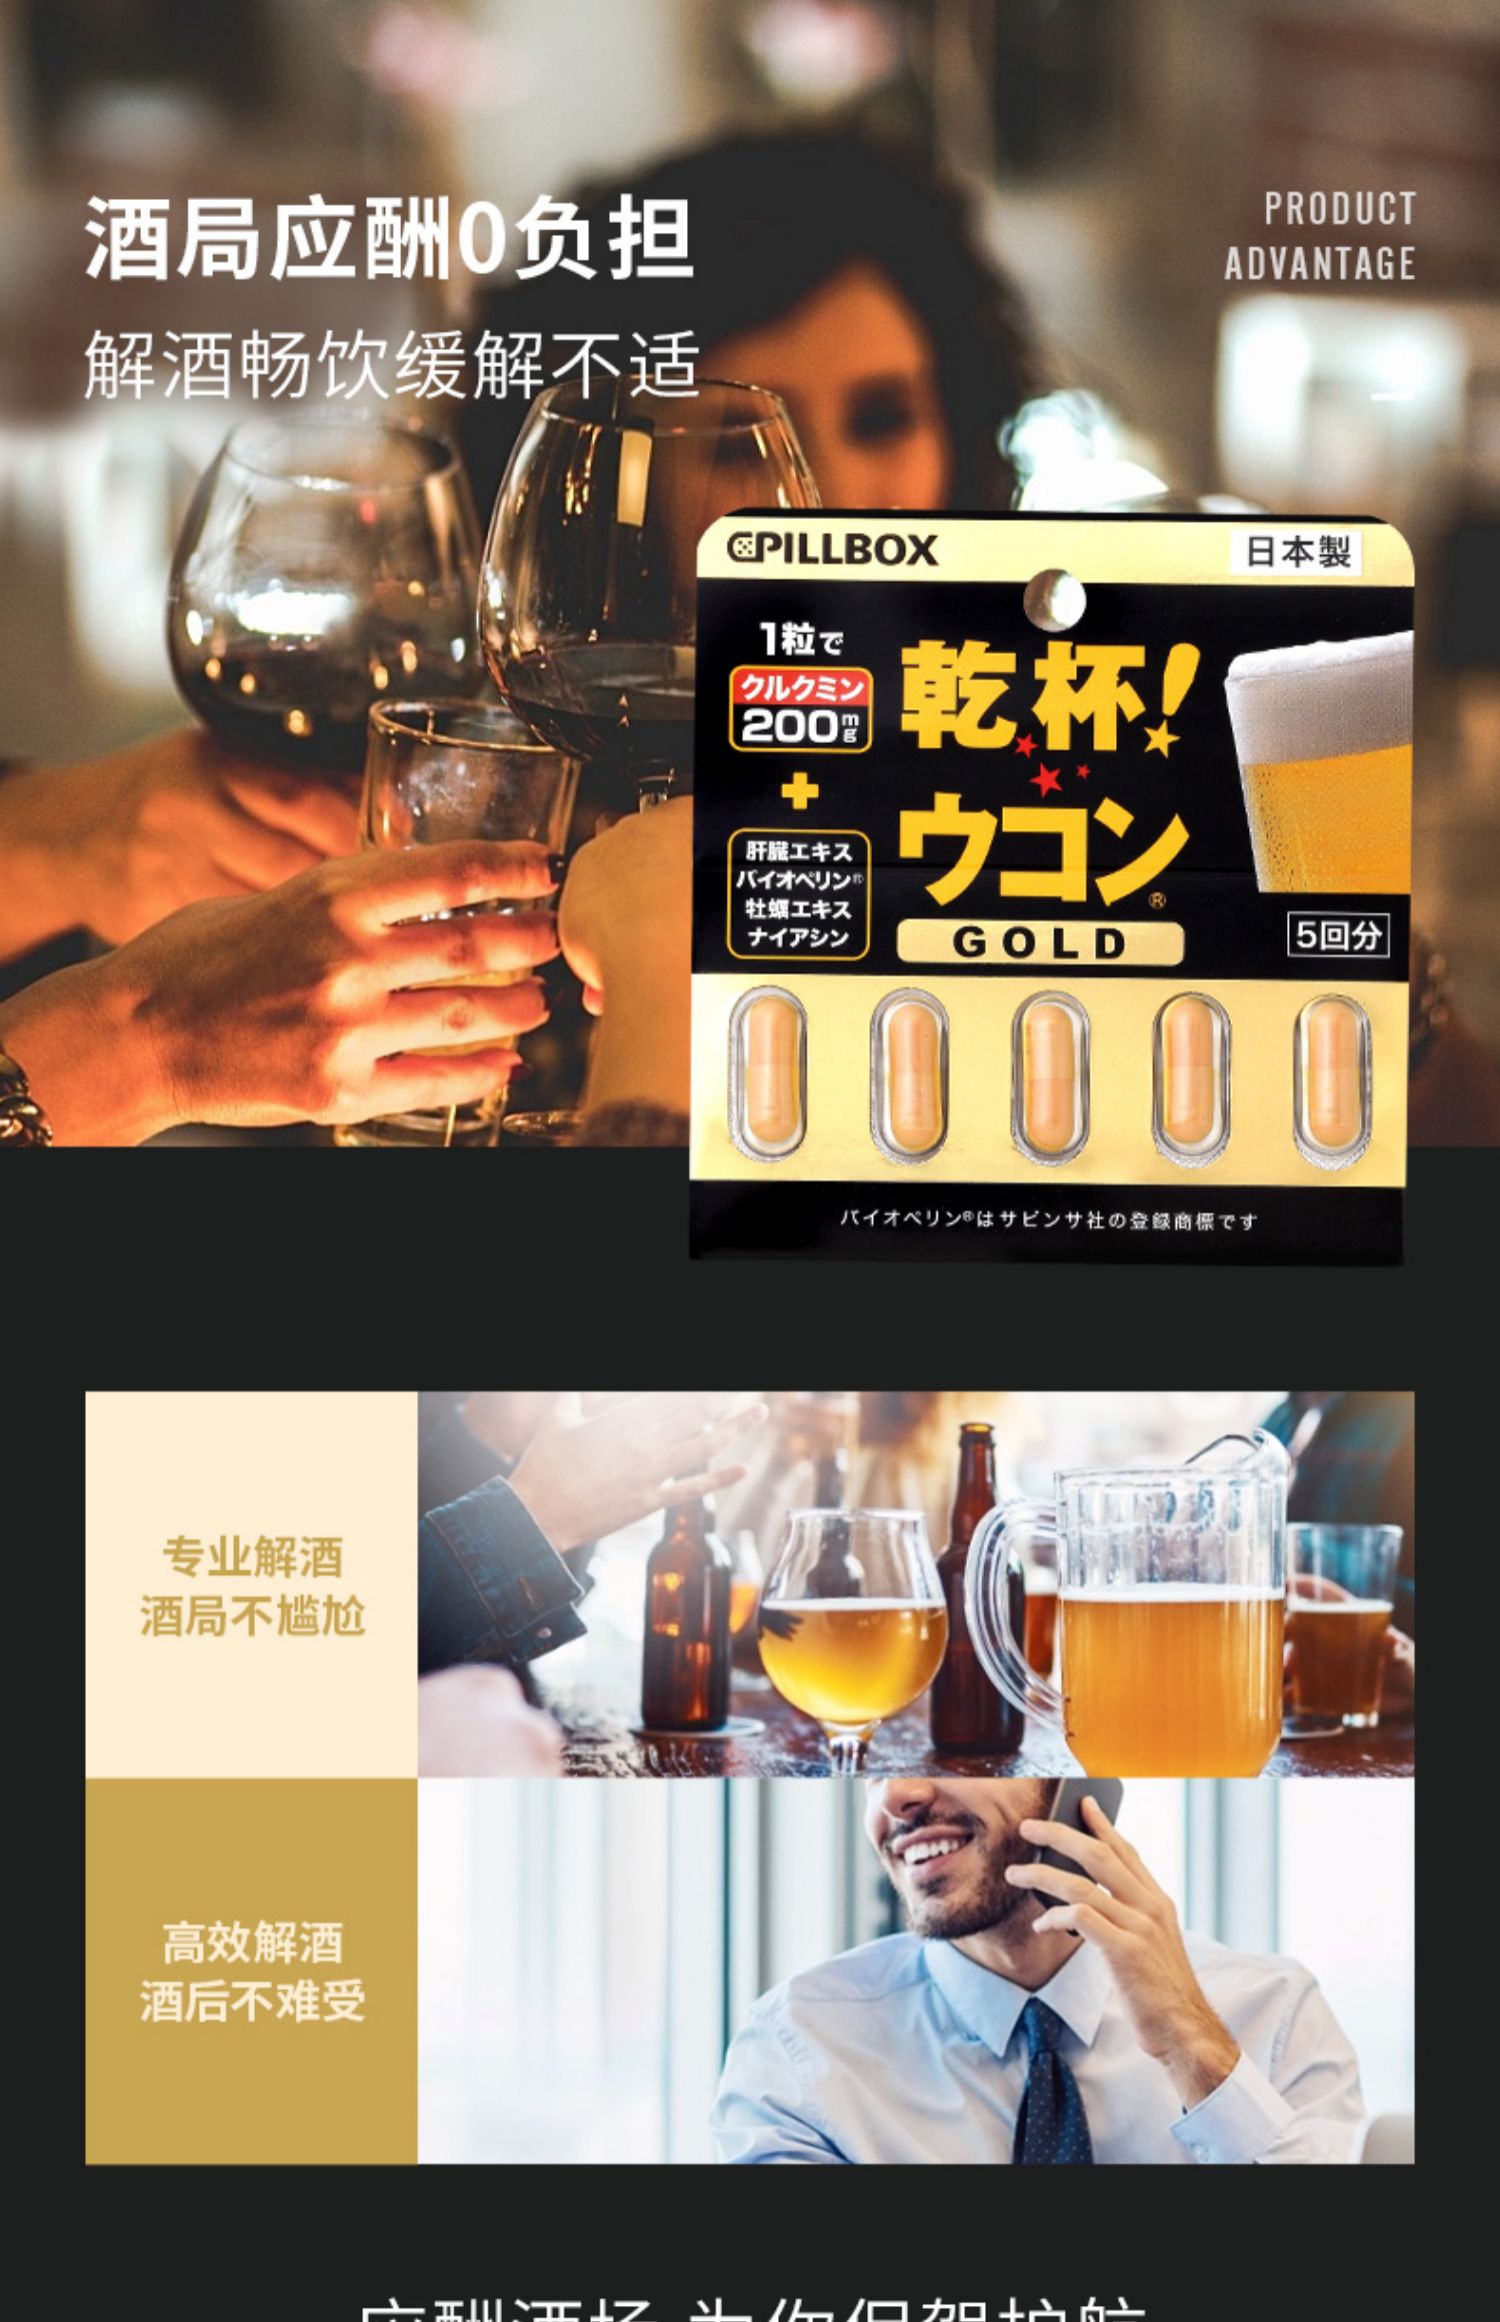 日本pillbox金装加强版解酒丸3板